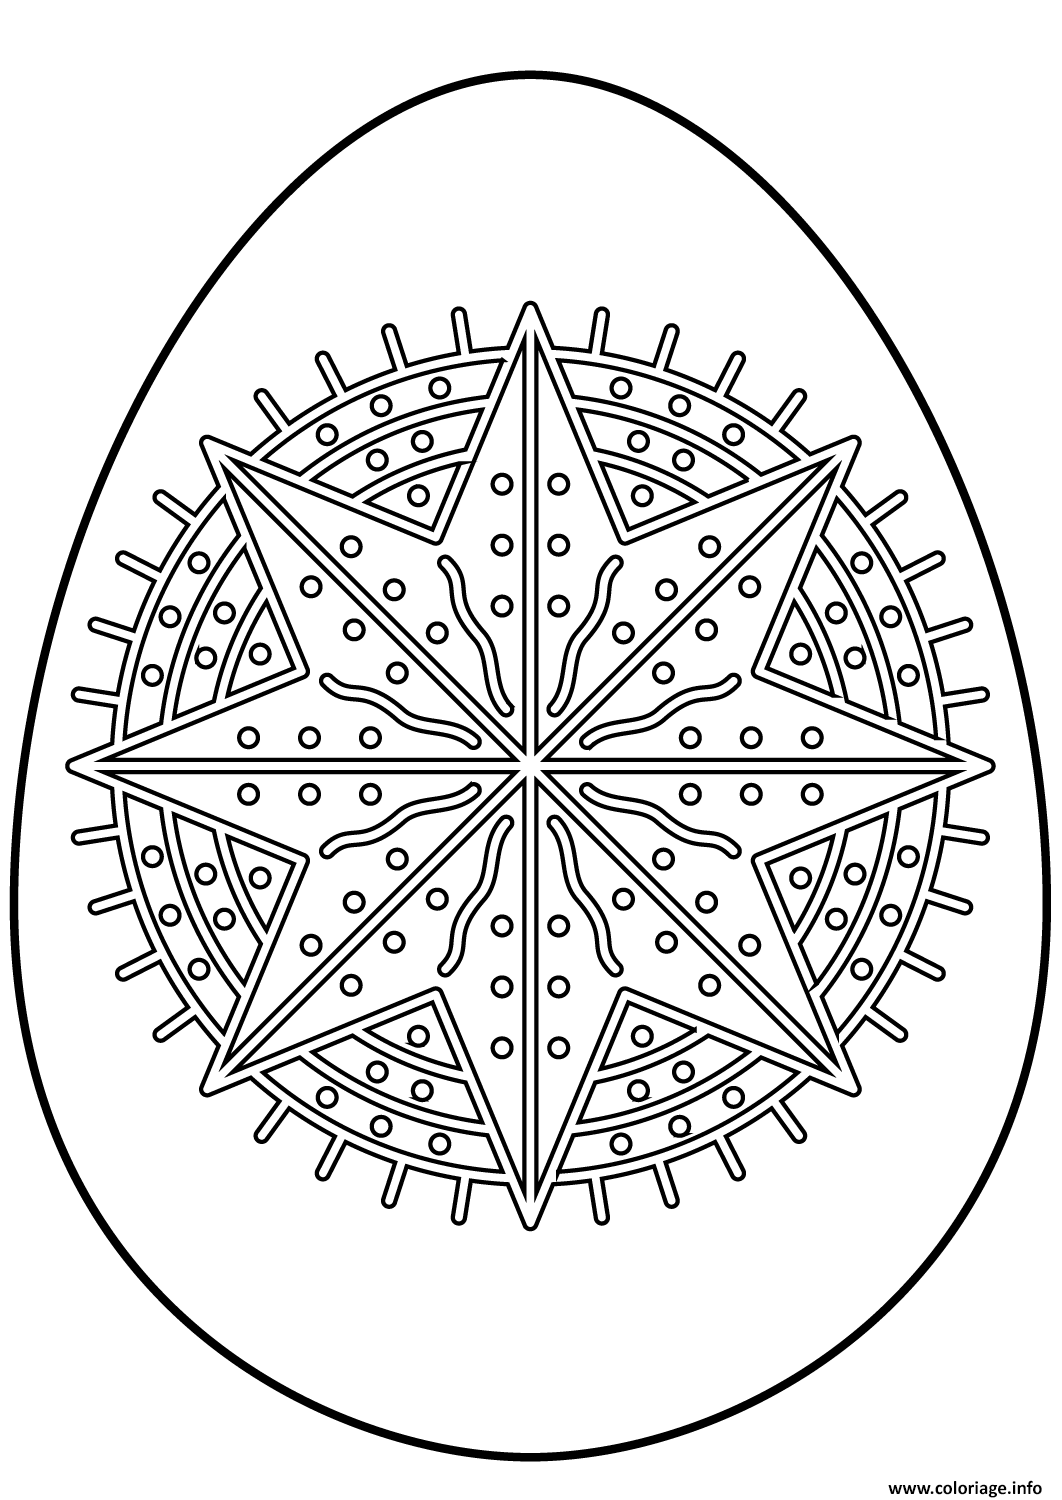 Dessin oeuf de paques avec octagram star Coloriage Gratuit à Imprimer